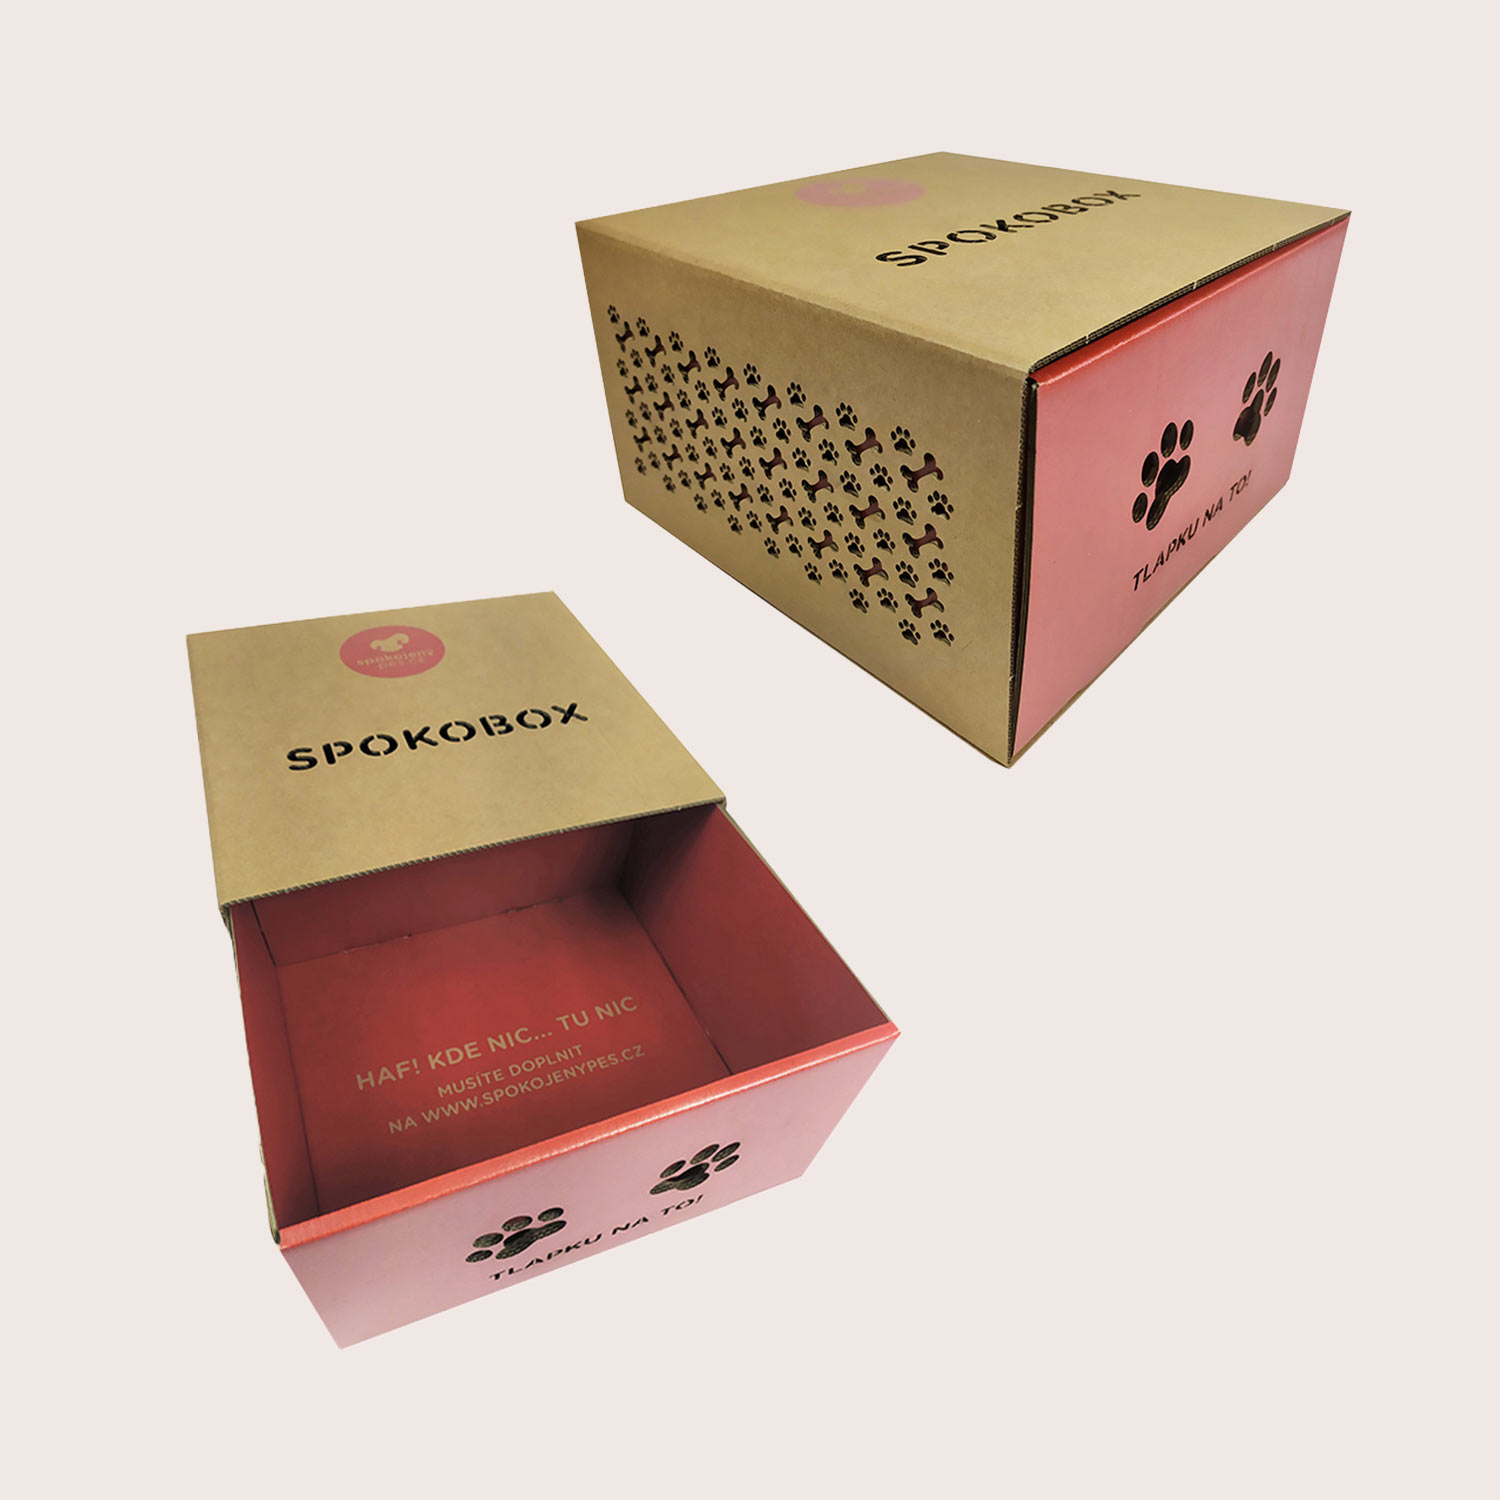 Sliding box as shipping carton